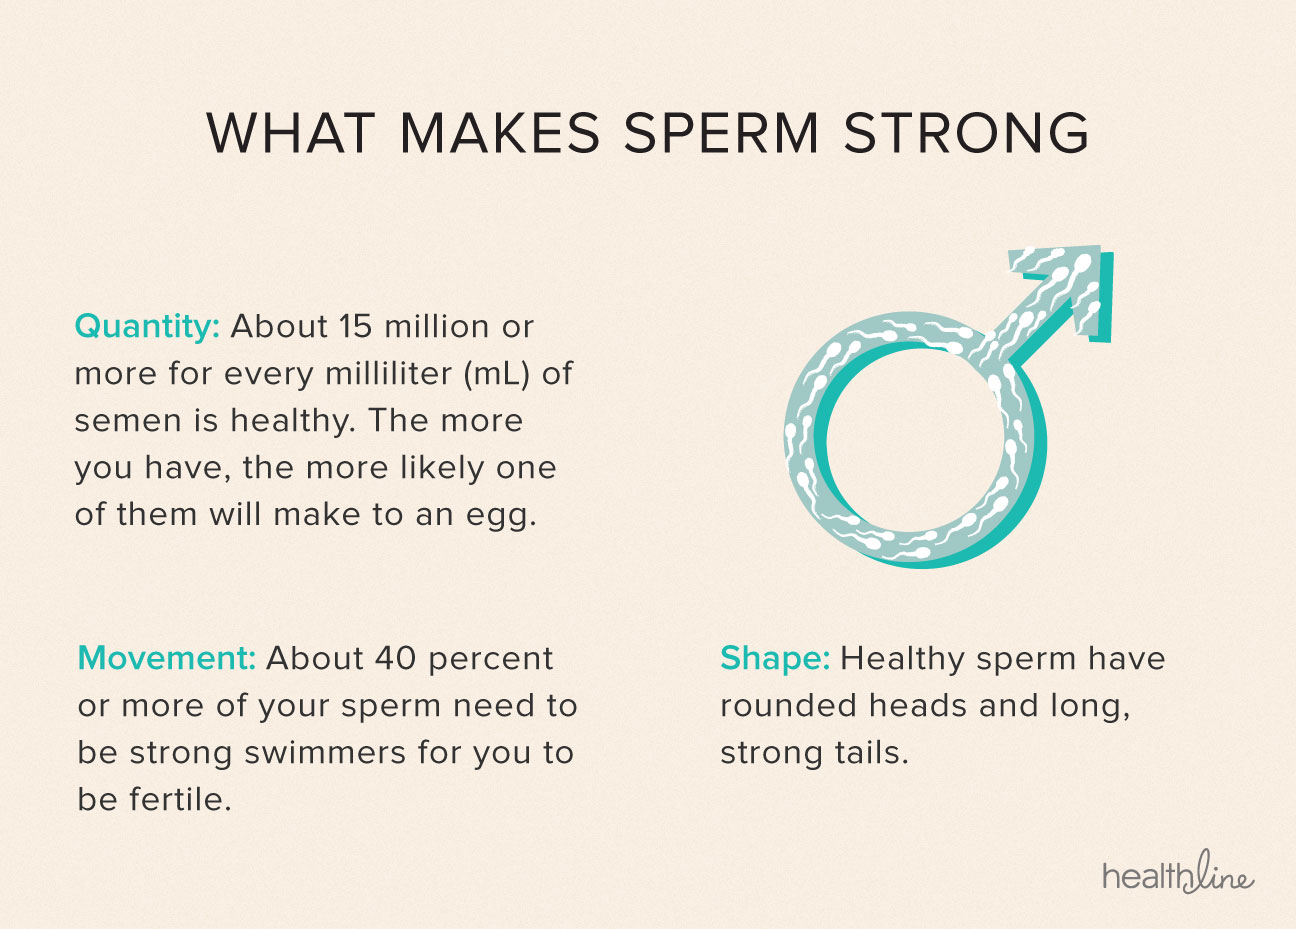 Sperm count low motility